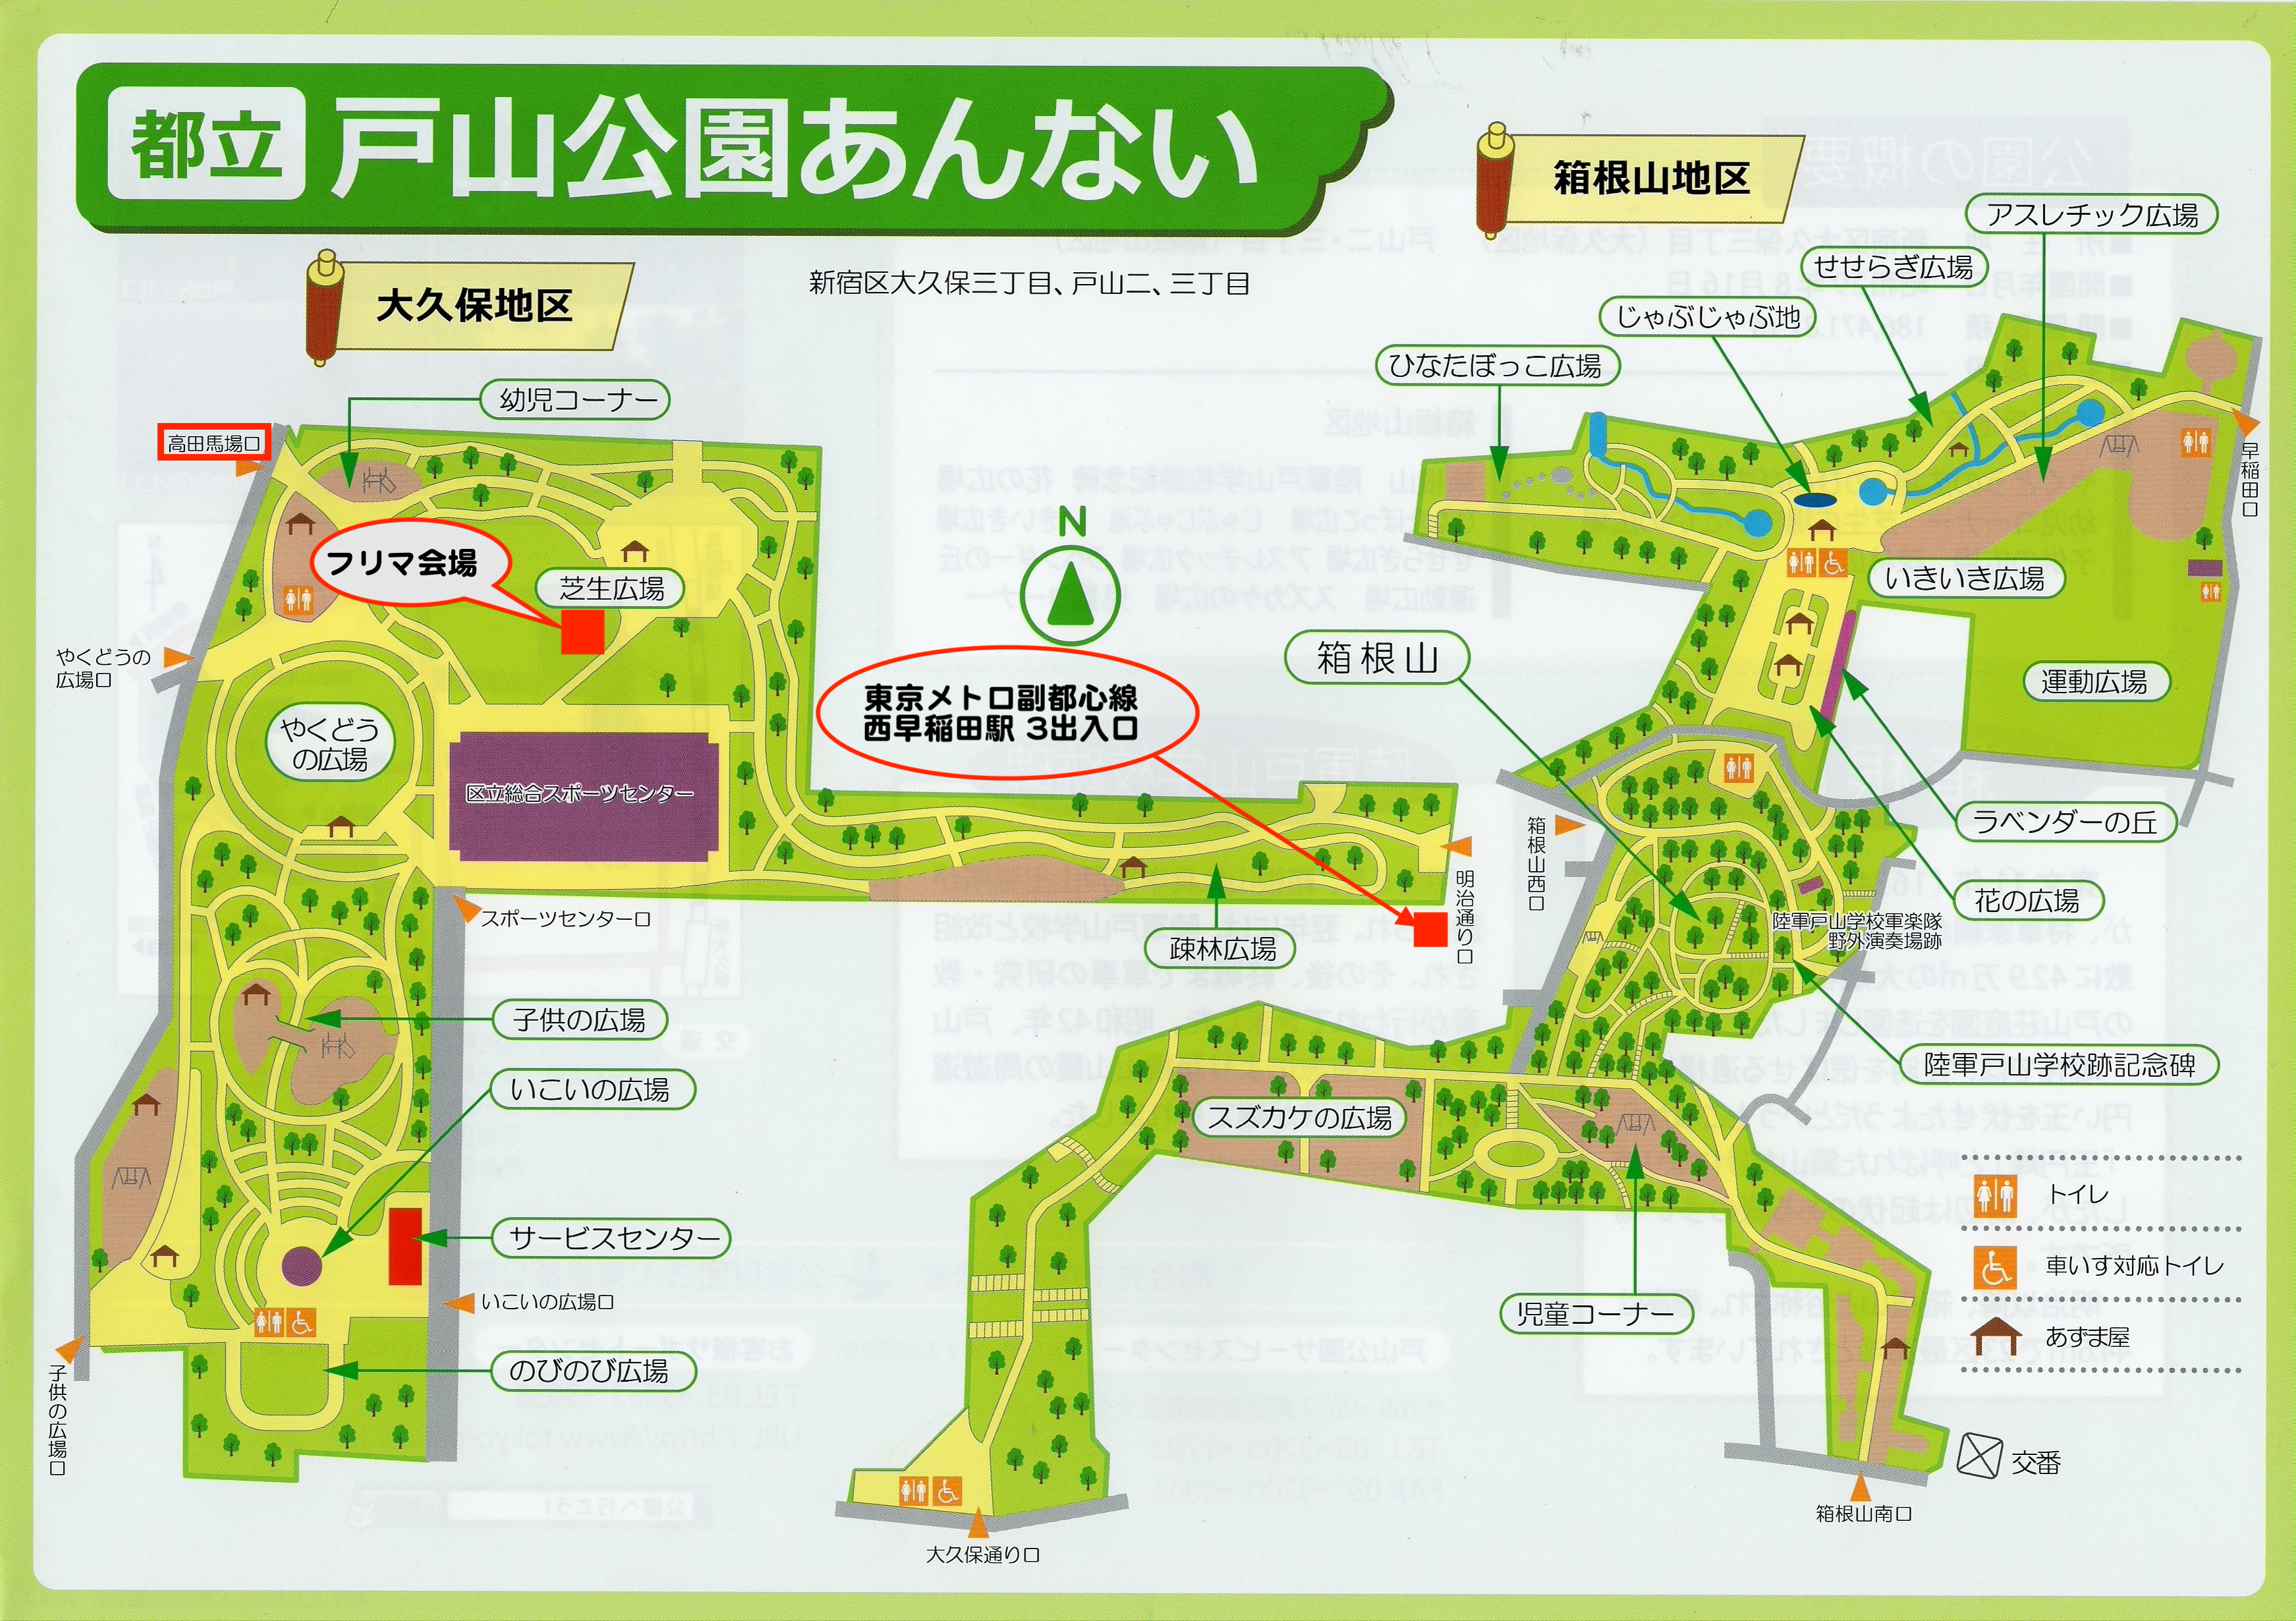 新宿・戸山公園フリマ・案内マップ